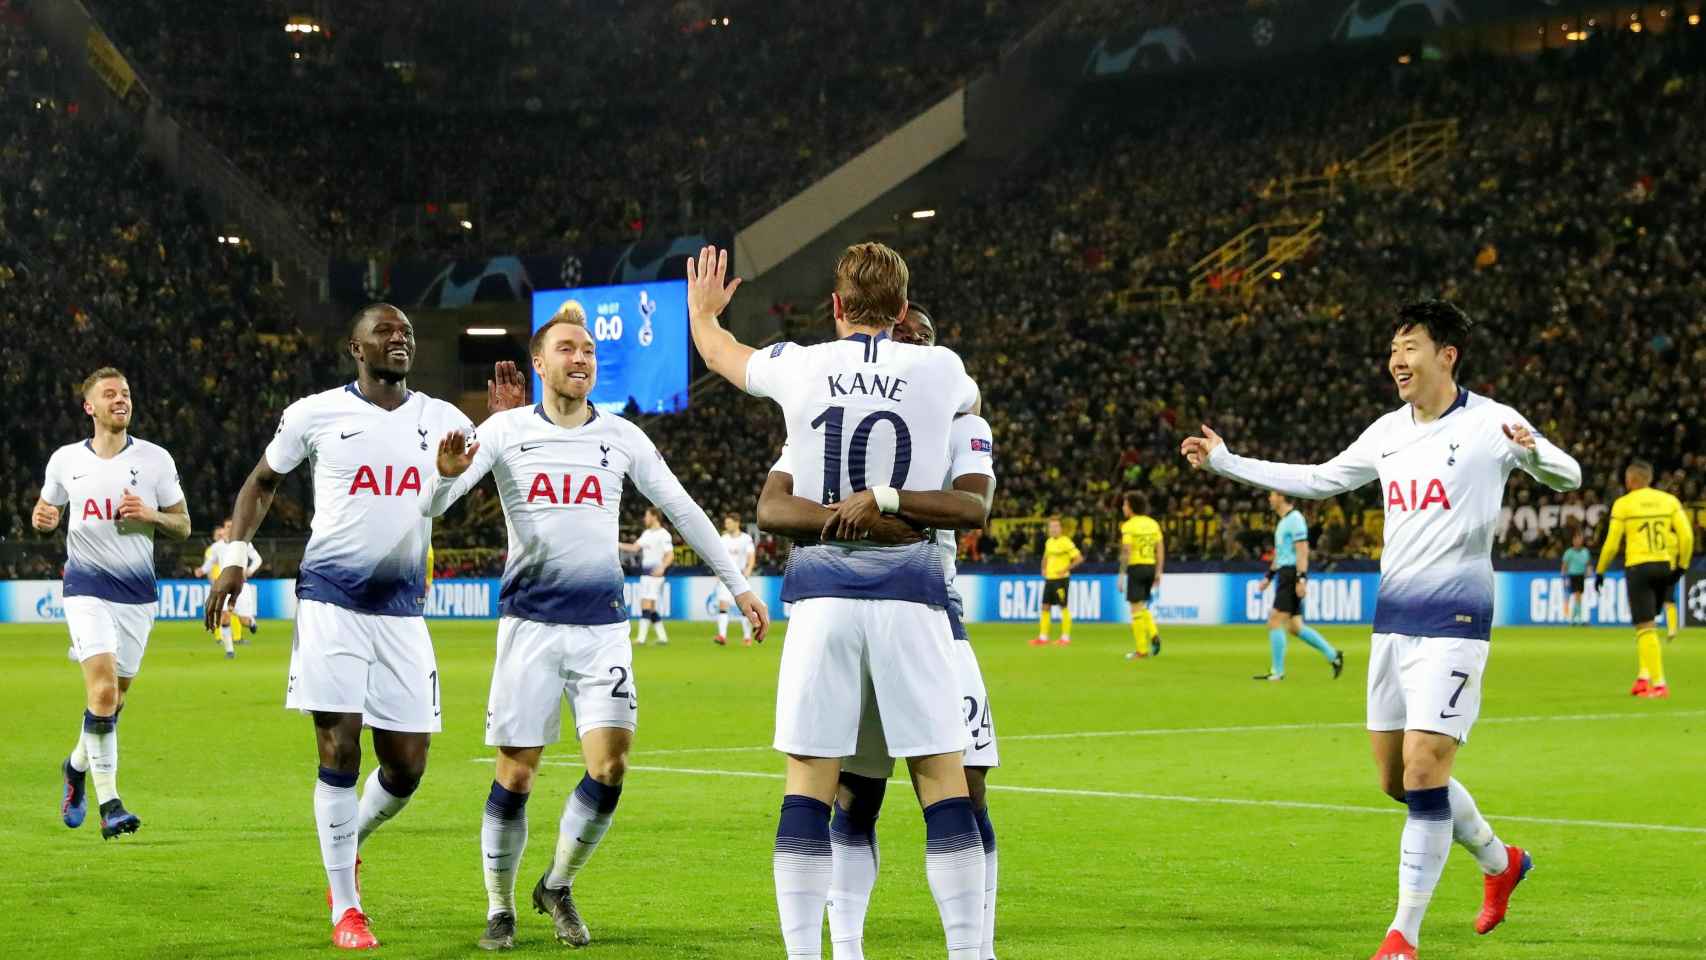 Kane celebra el gol del Tottenham Hotspur ante el Borussia Dortmund en Champions League